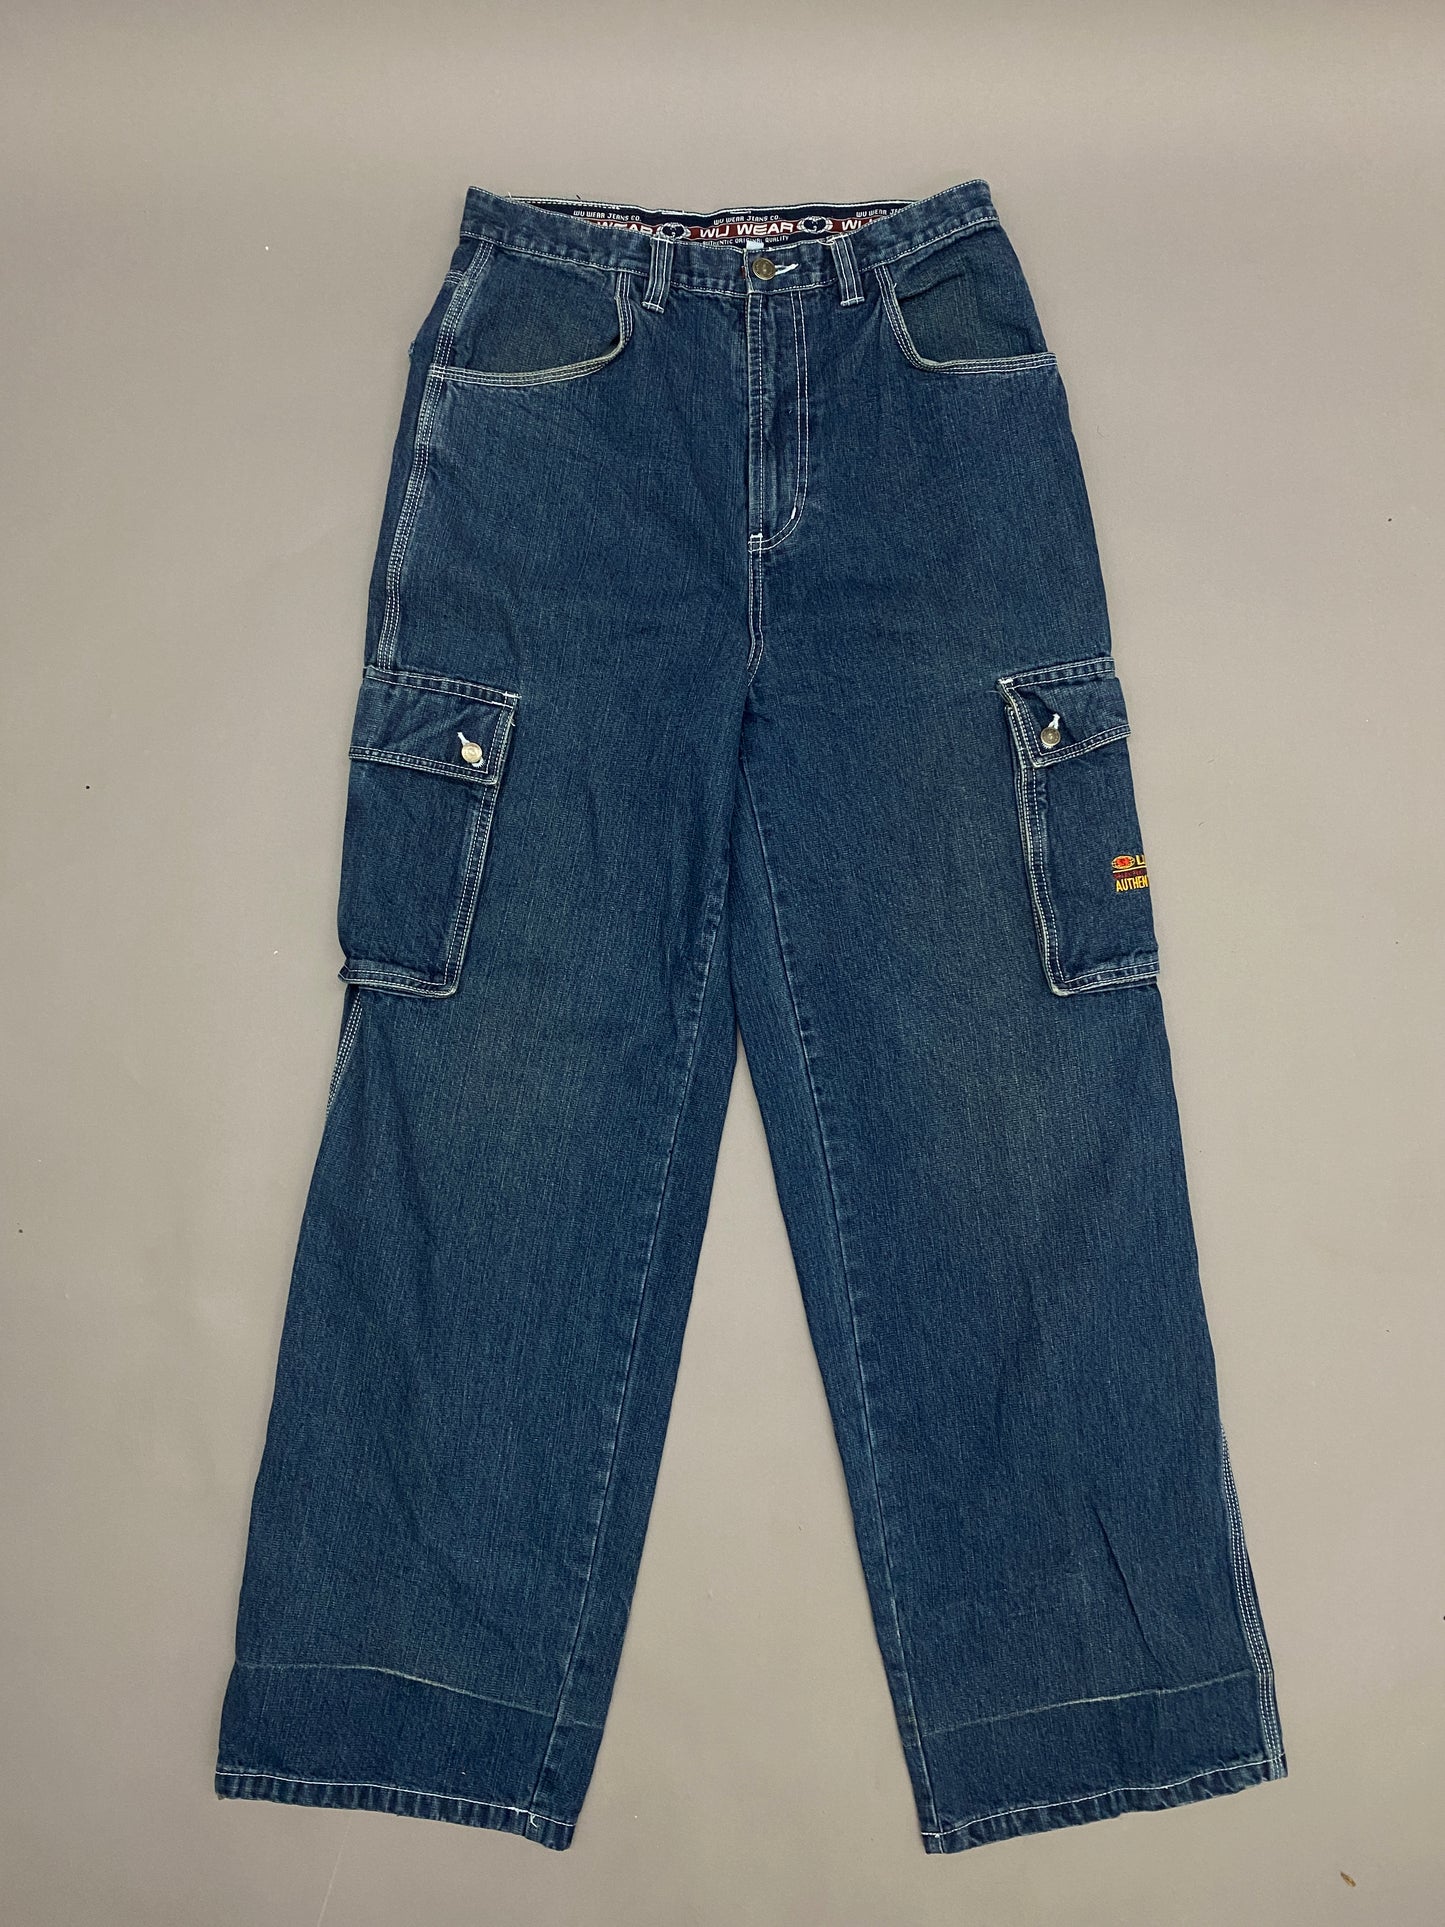 Wu Wear Vintage Cargo Pants - 30